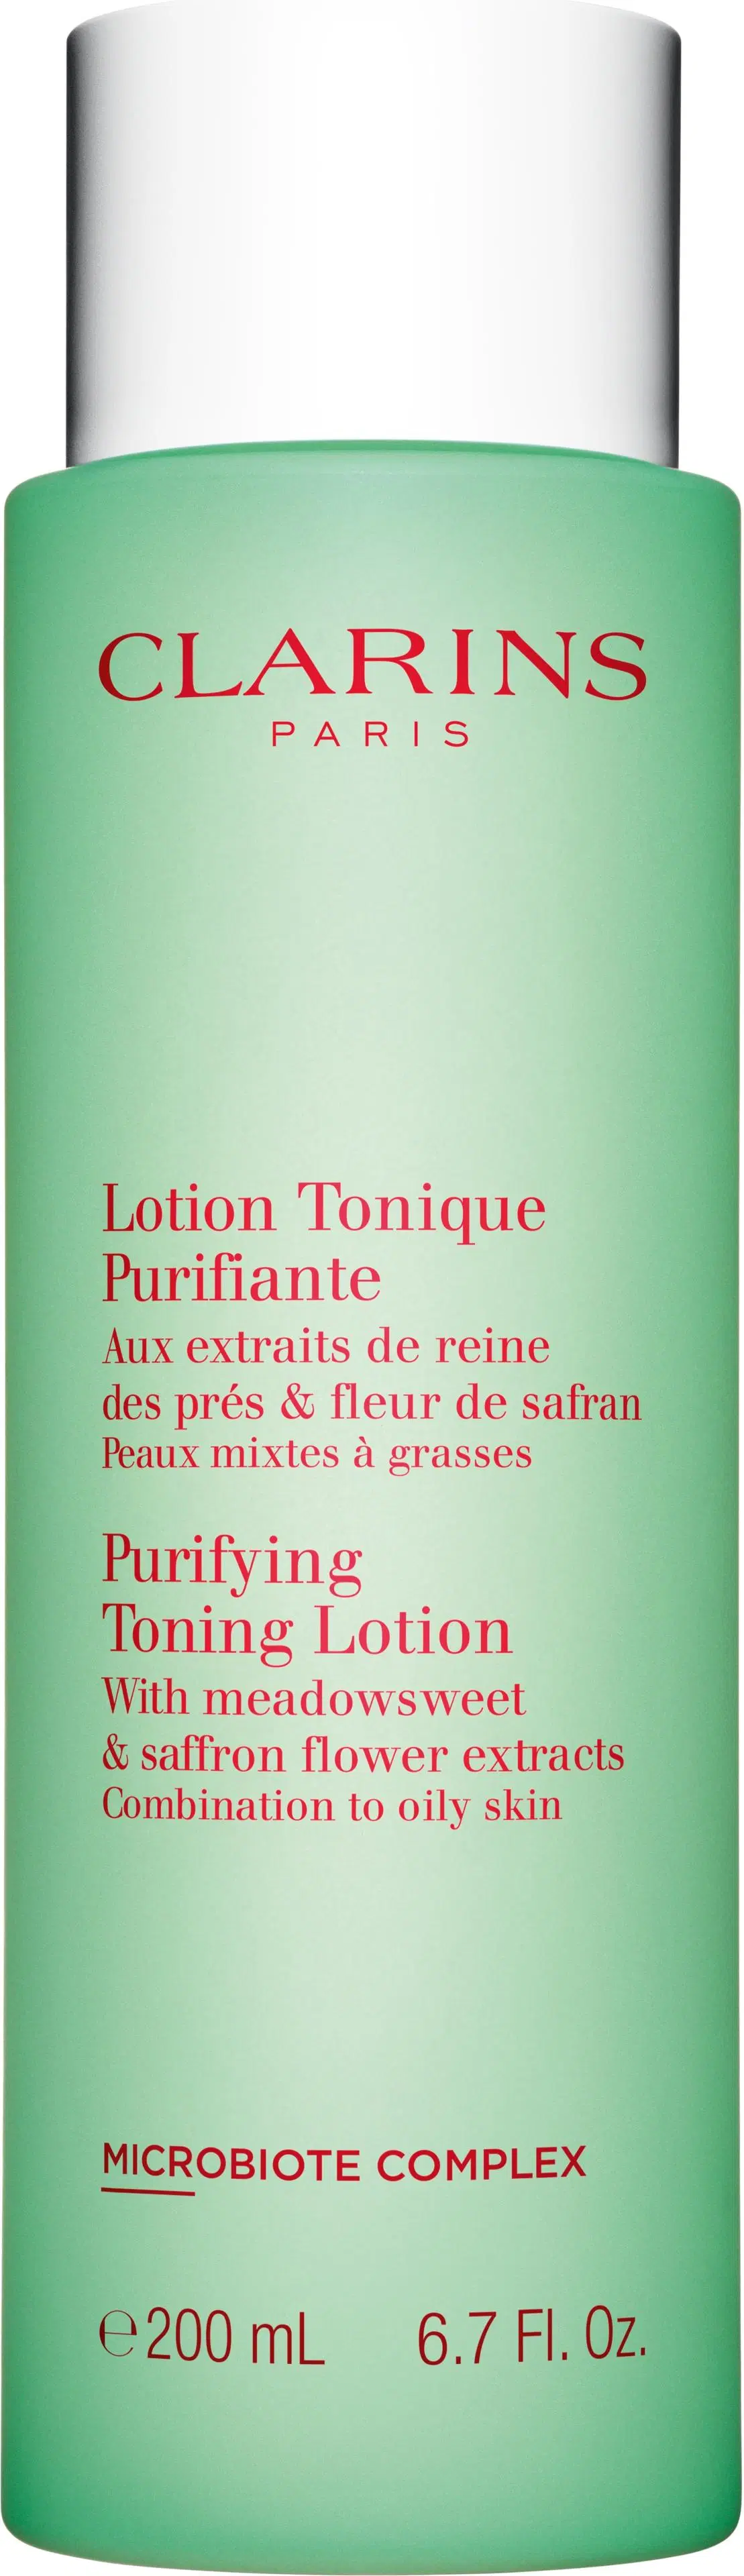 Clarins Purifying Toning Lotion kasvovesi 200 ml